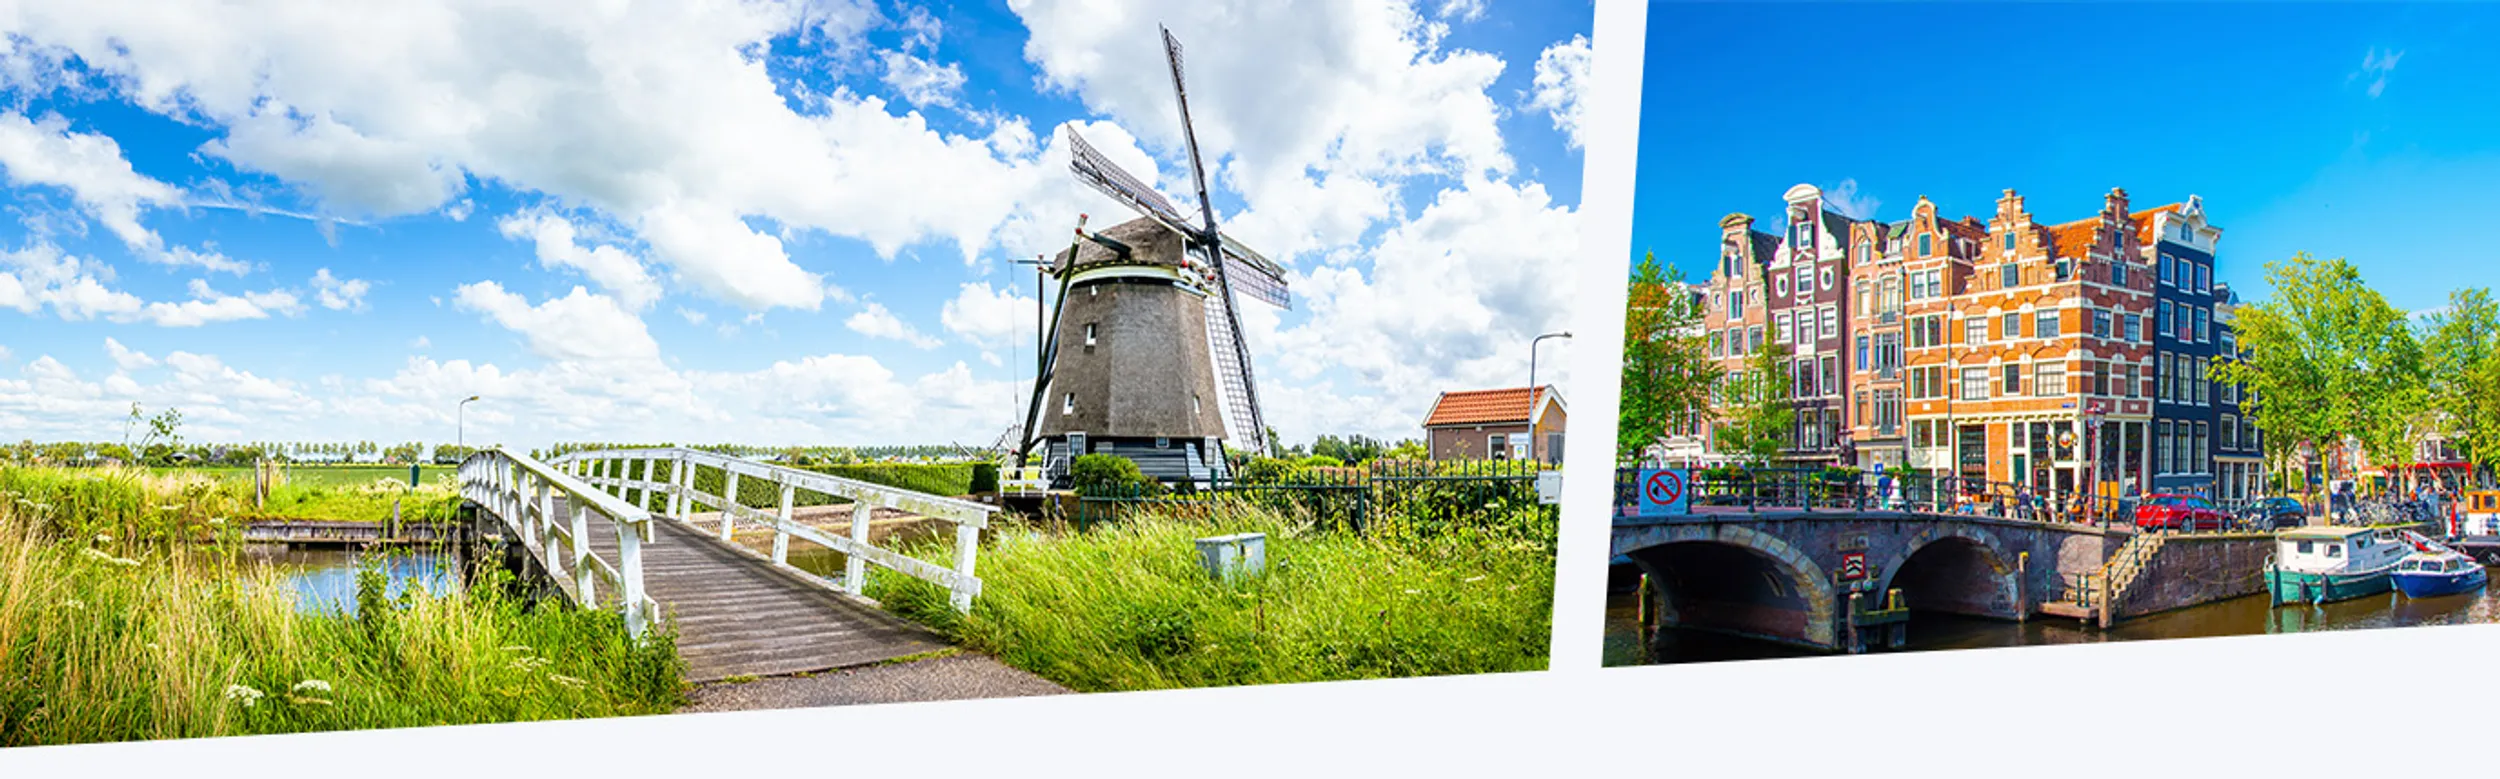 Windmühle in Holland bei Tag und Amsterdam